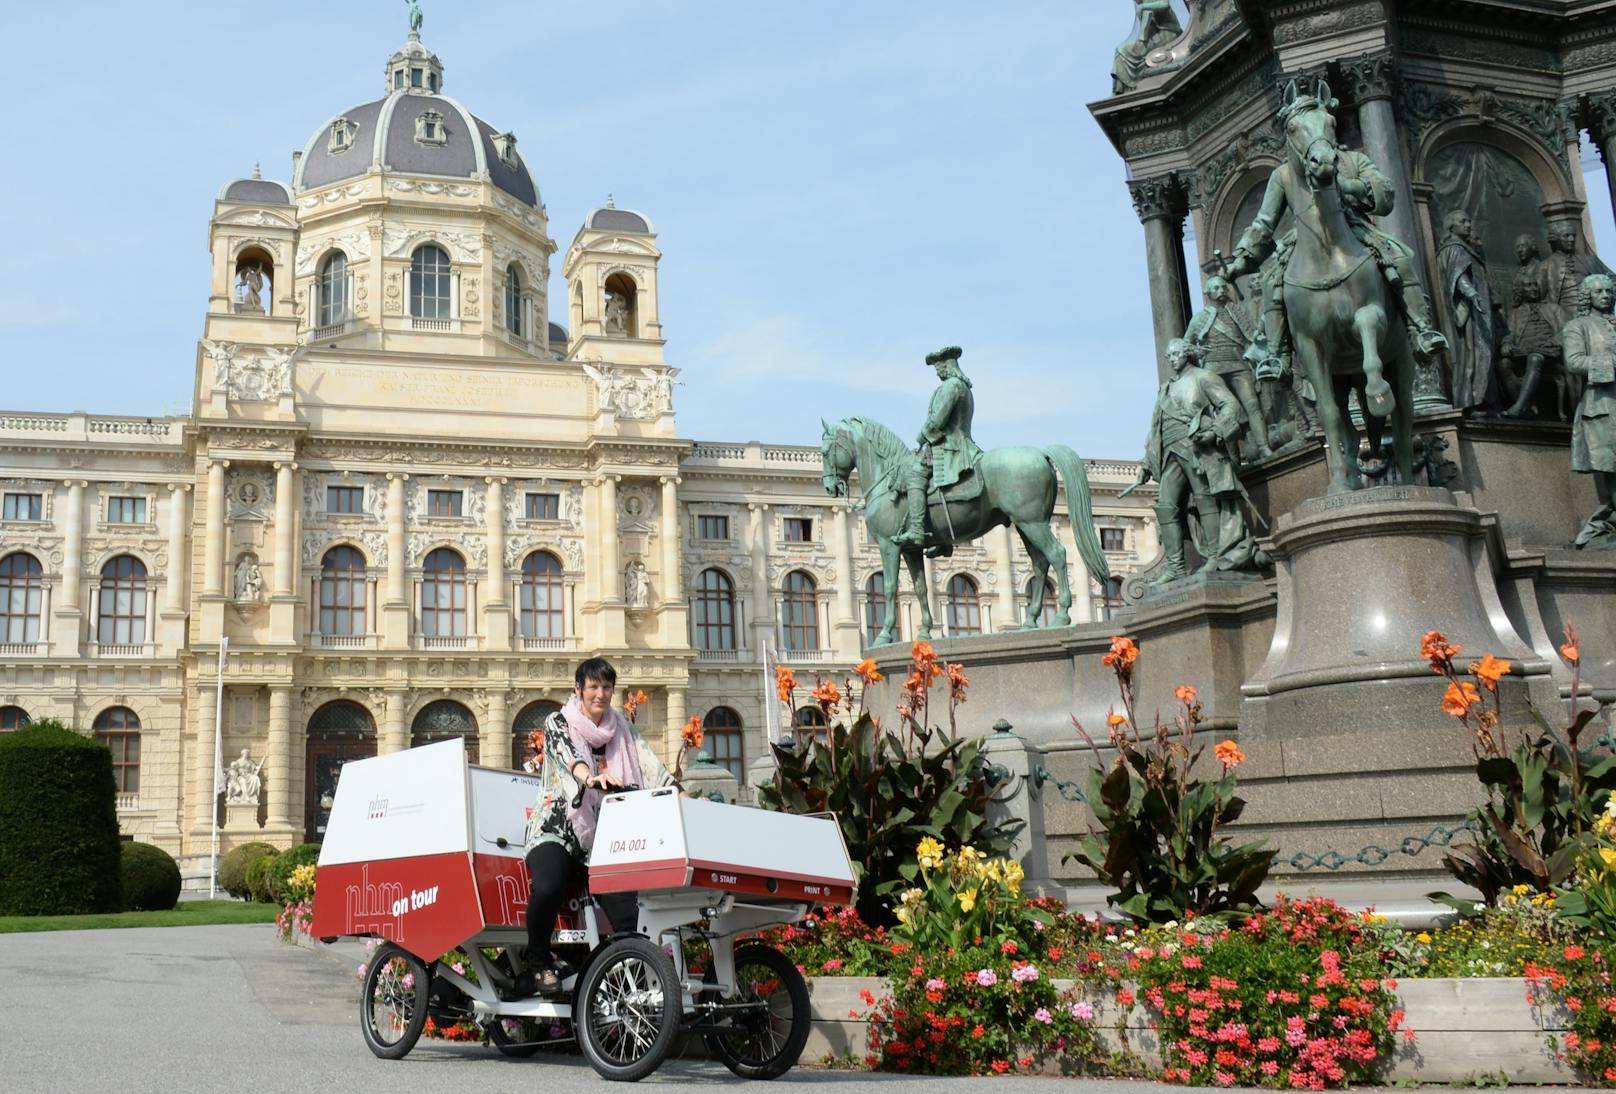 Generaldirektorin Dr. Katrin Vohland mit dem Fahrrad "NHM Wien on tour" am Maria-Theresien-Platz